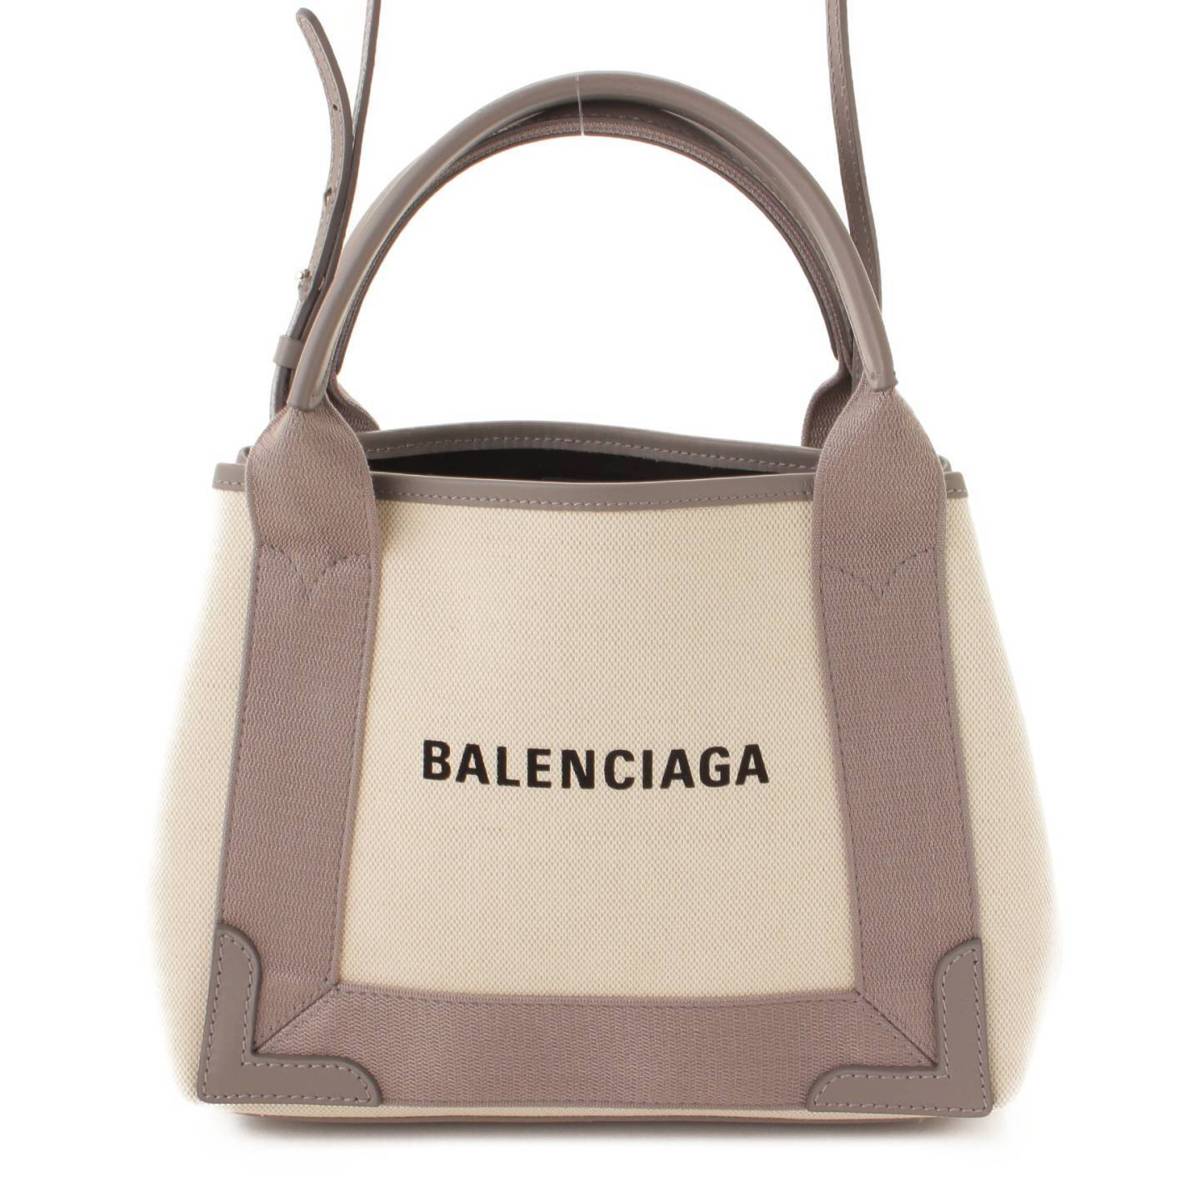 バレンシアガ(Balenciaga) ネイビーカバスXS 2wayハンドバッグ 